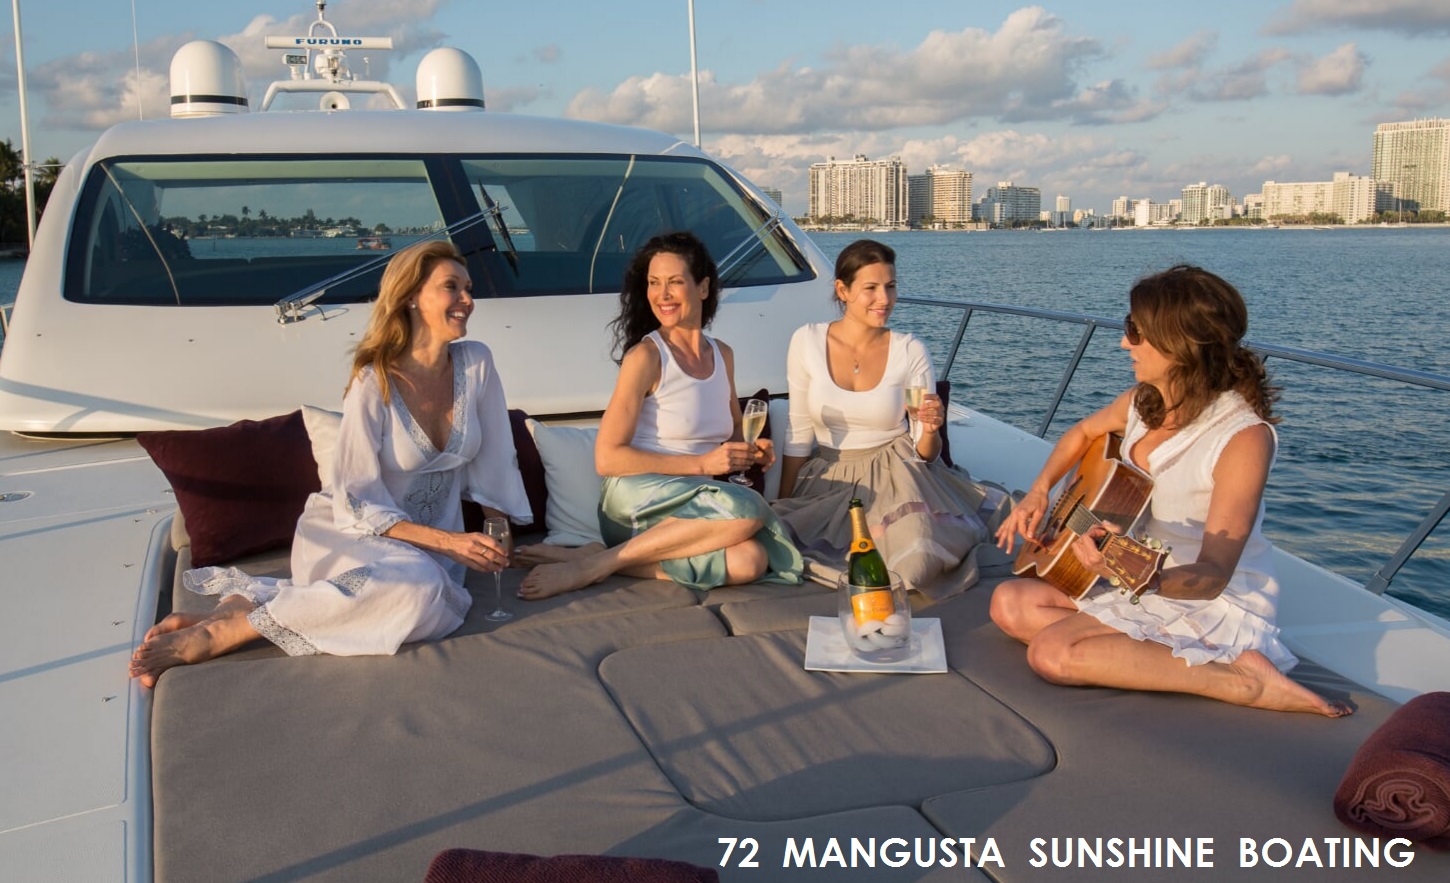 sunshine-boating-manusta-72-h